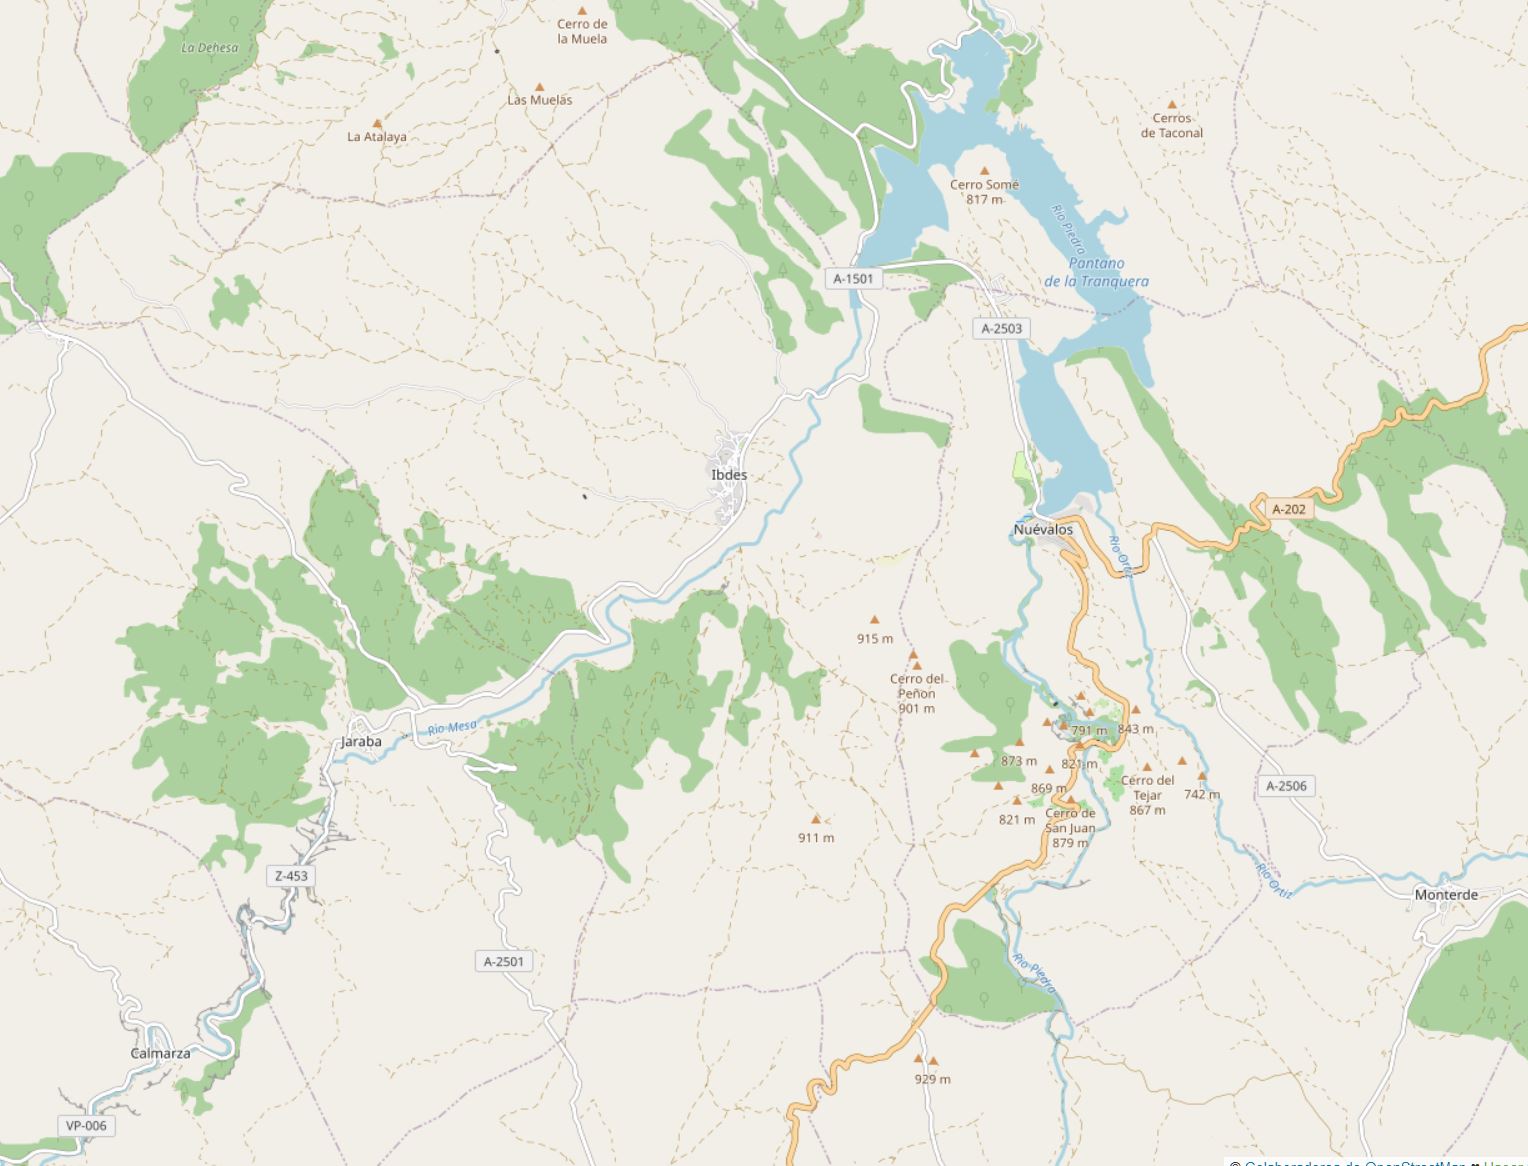 Mapa Valles - JA Image Hotspot